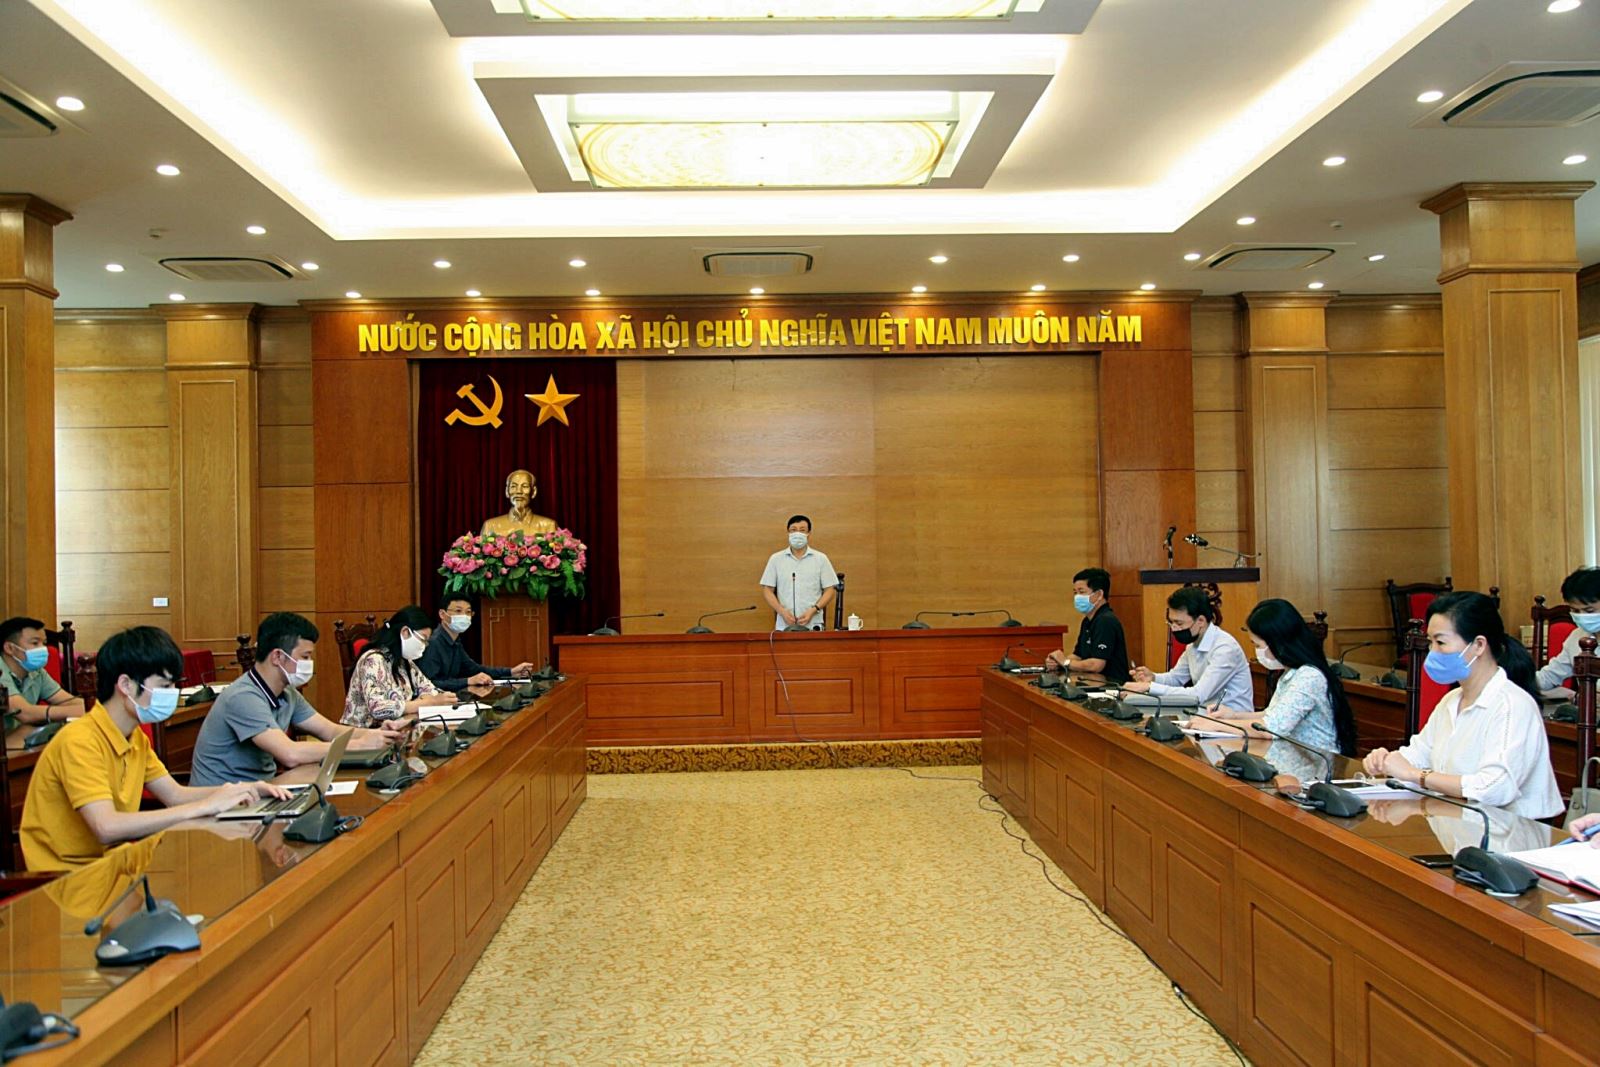 Phó Bí thư Tỉnh ủy, Chủ tịch UBND tỉnh Lê Duy Thành phát biểu tại buổi họp báo